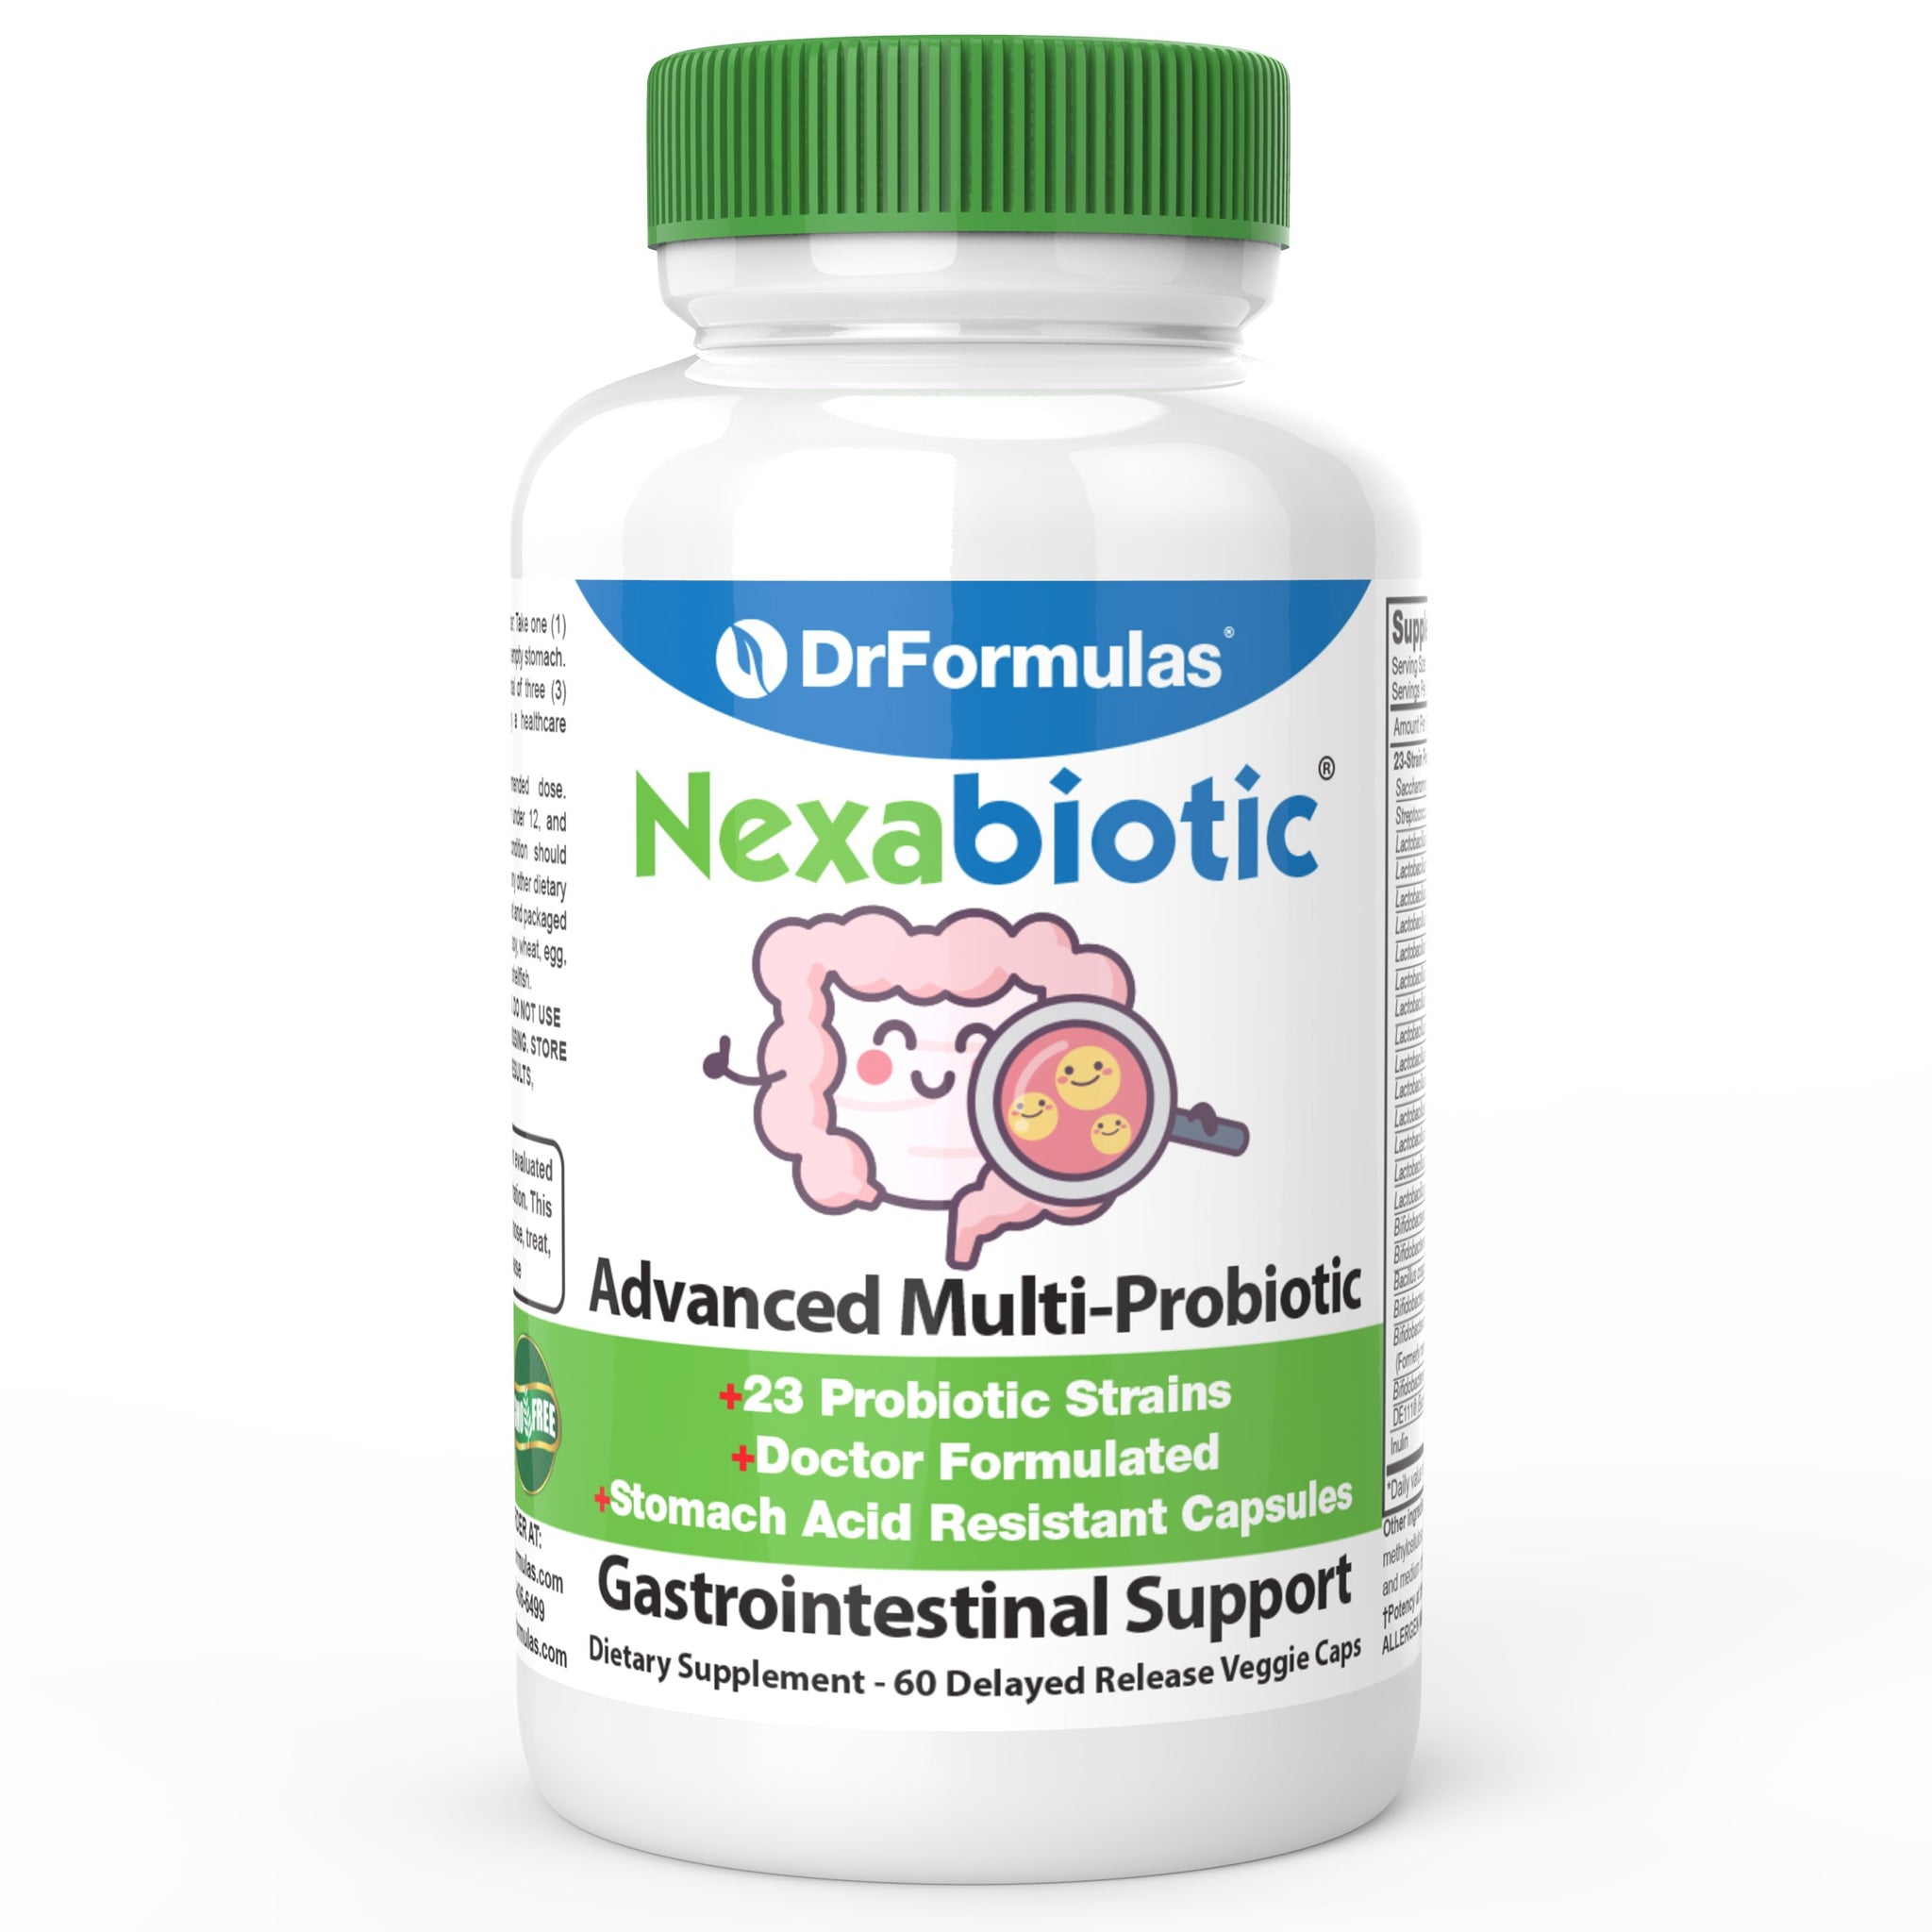 DrFormulas’ Nexabiotic Advanced Multi Probiotic